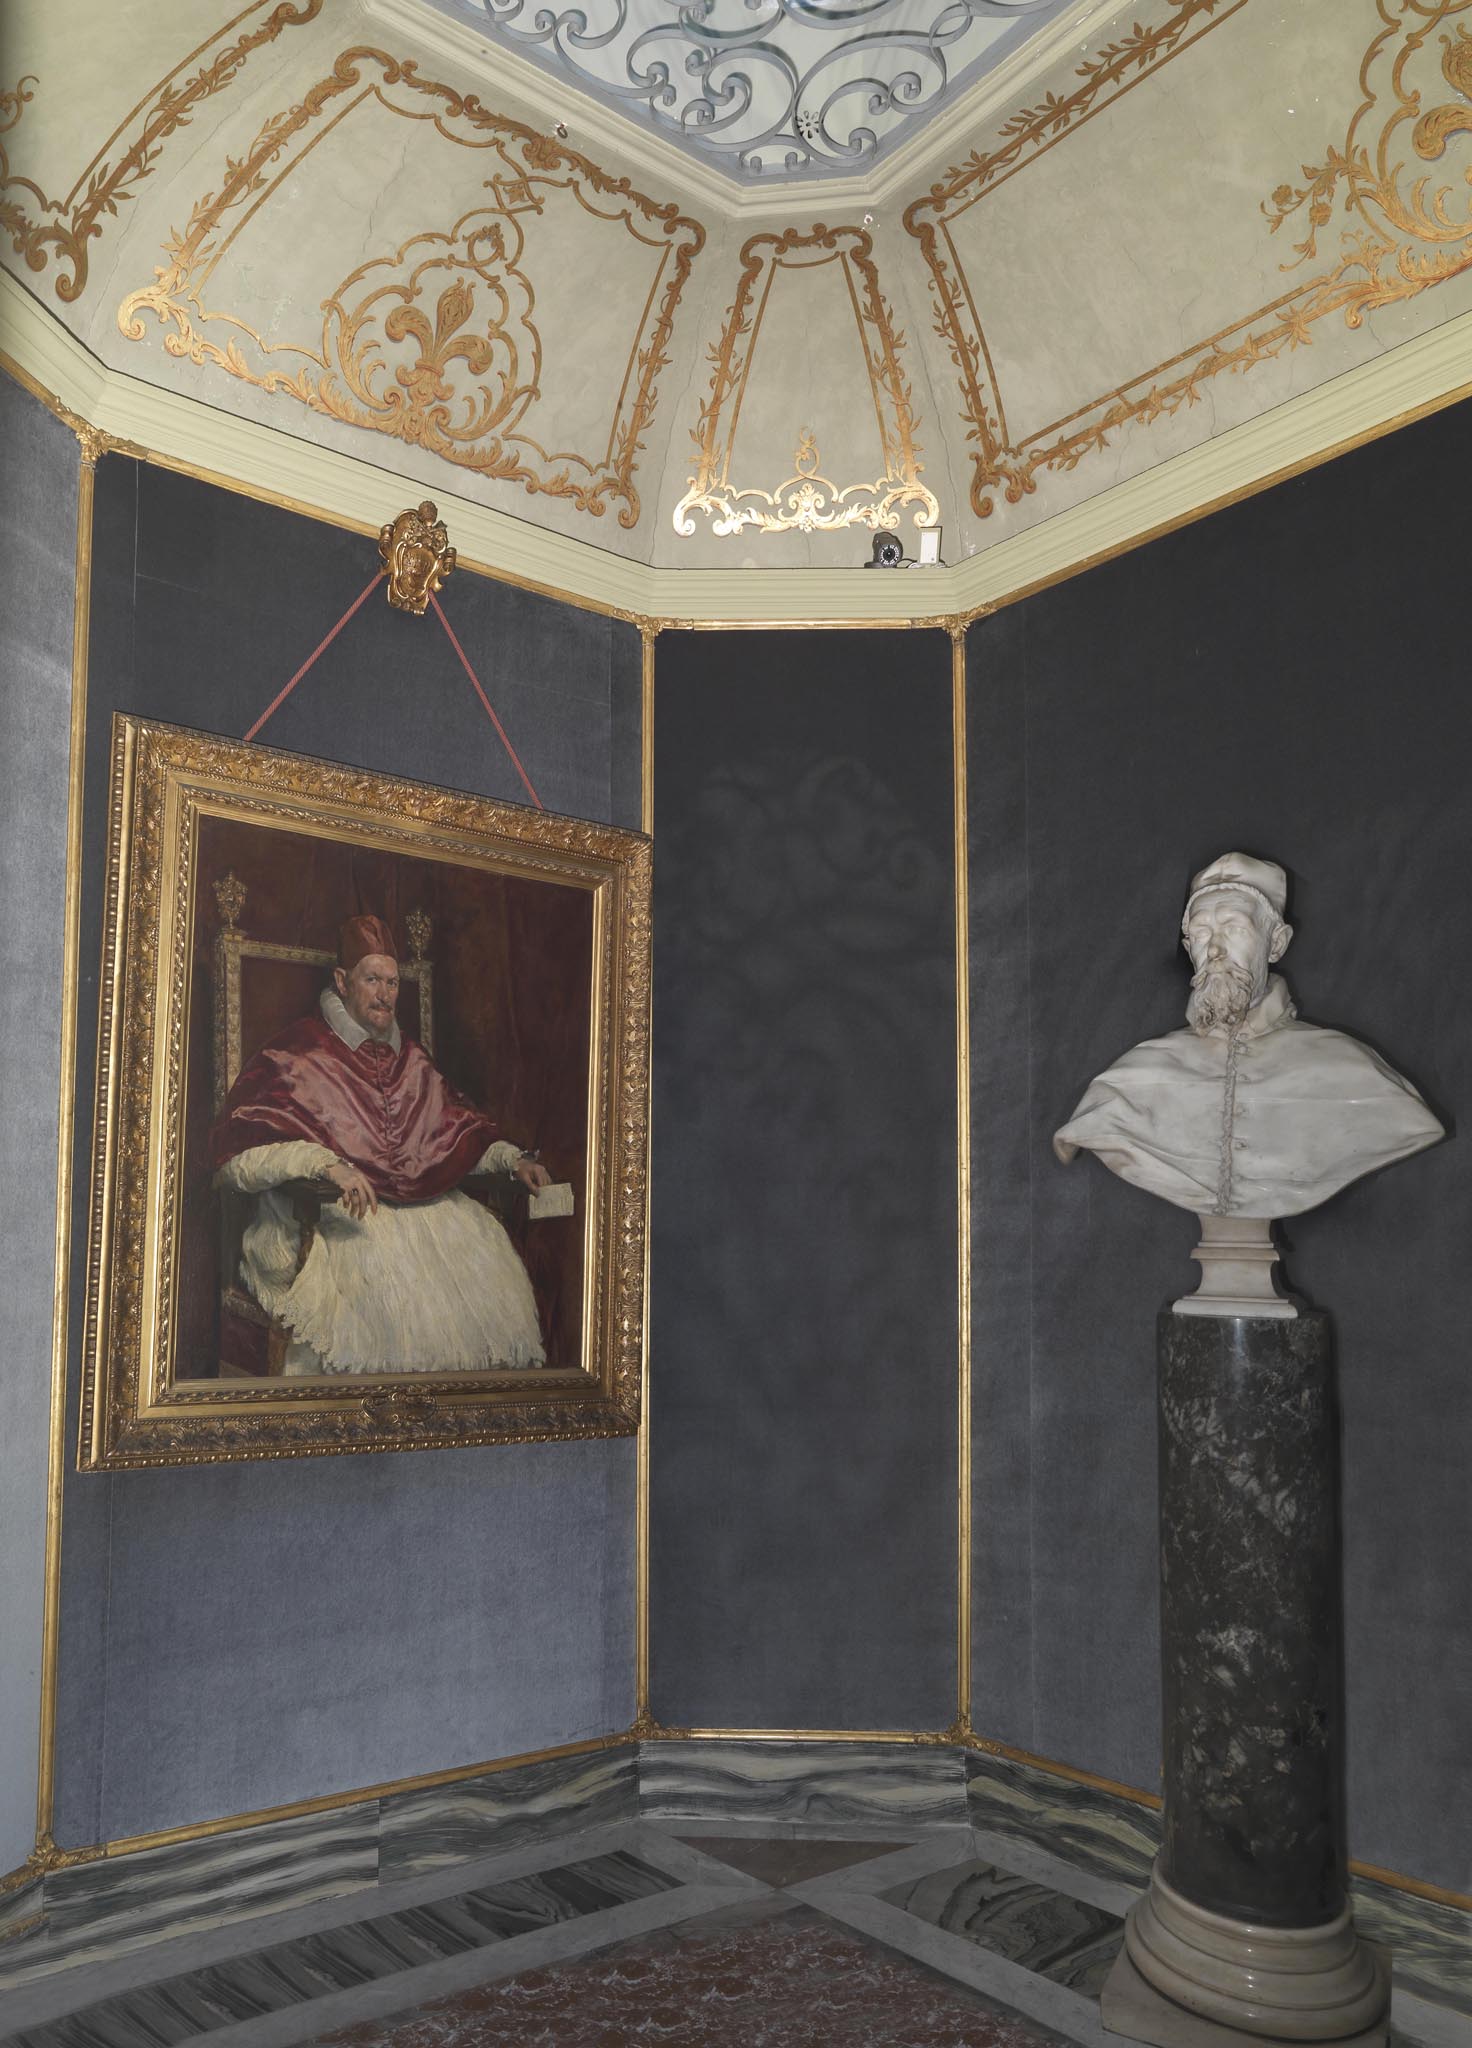 Il Gabinetto Velázquez. Il Camerino ospita il “Ritratto di Innocenzo X” (1650) di Diego Rodriguez de Silva y Velázquez (1599-1660), la cui esecuzione testimonia la politica internazionale del tempo, segnata dal riavvicinamento del papato alla Spagna. Nella sala, anche uno dei due busti dello stesso papa, di Gian Lorenzo Bernini (1598-1680).